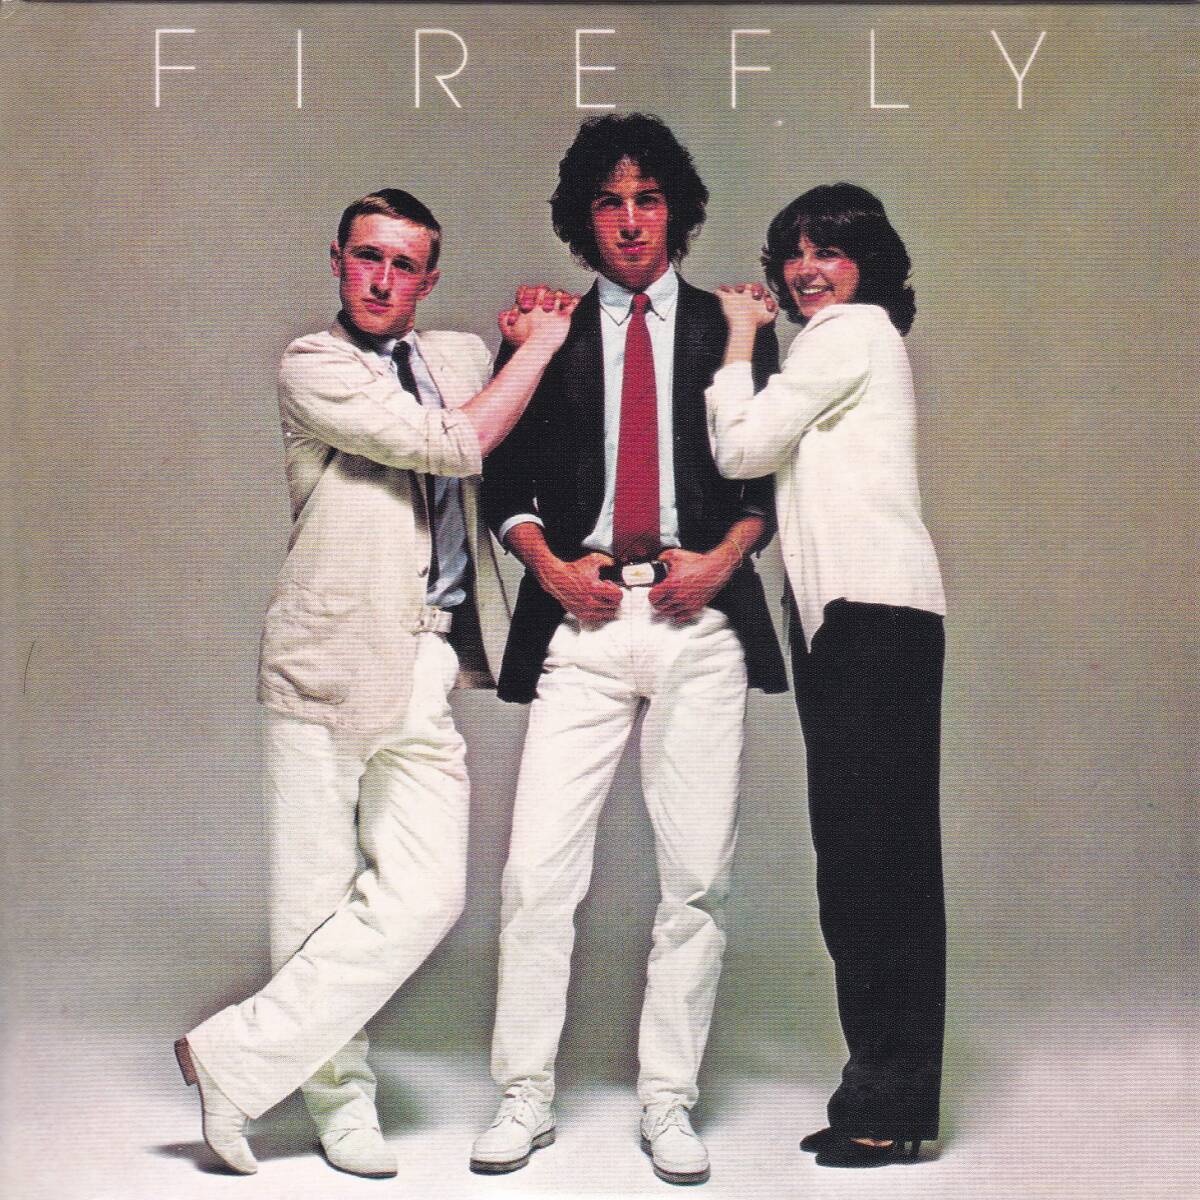 ダンクラ/ブギーディスコ■FIREFLY / same +3 (1980) レア廃盤 世界唯一のCD化盤!! 名曲「Love And Friendship」収録!! イタロディスコ!!_画像1